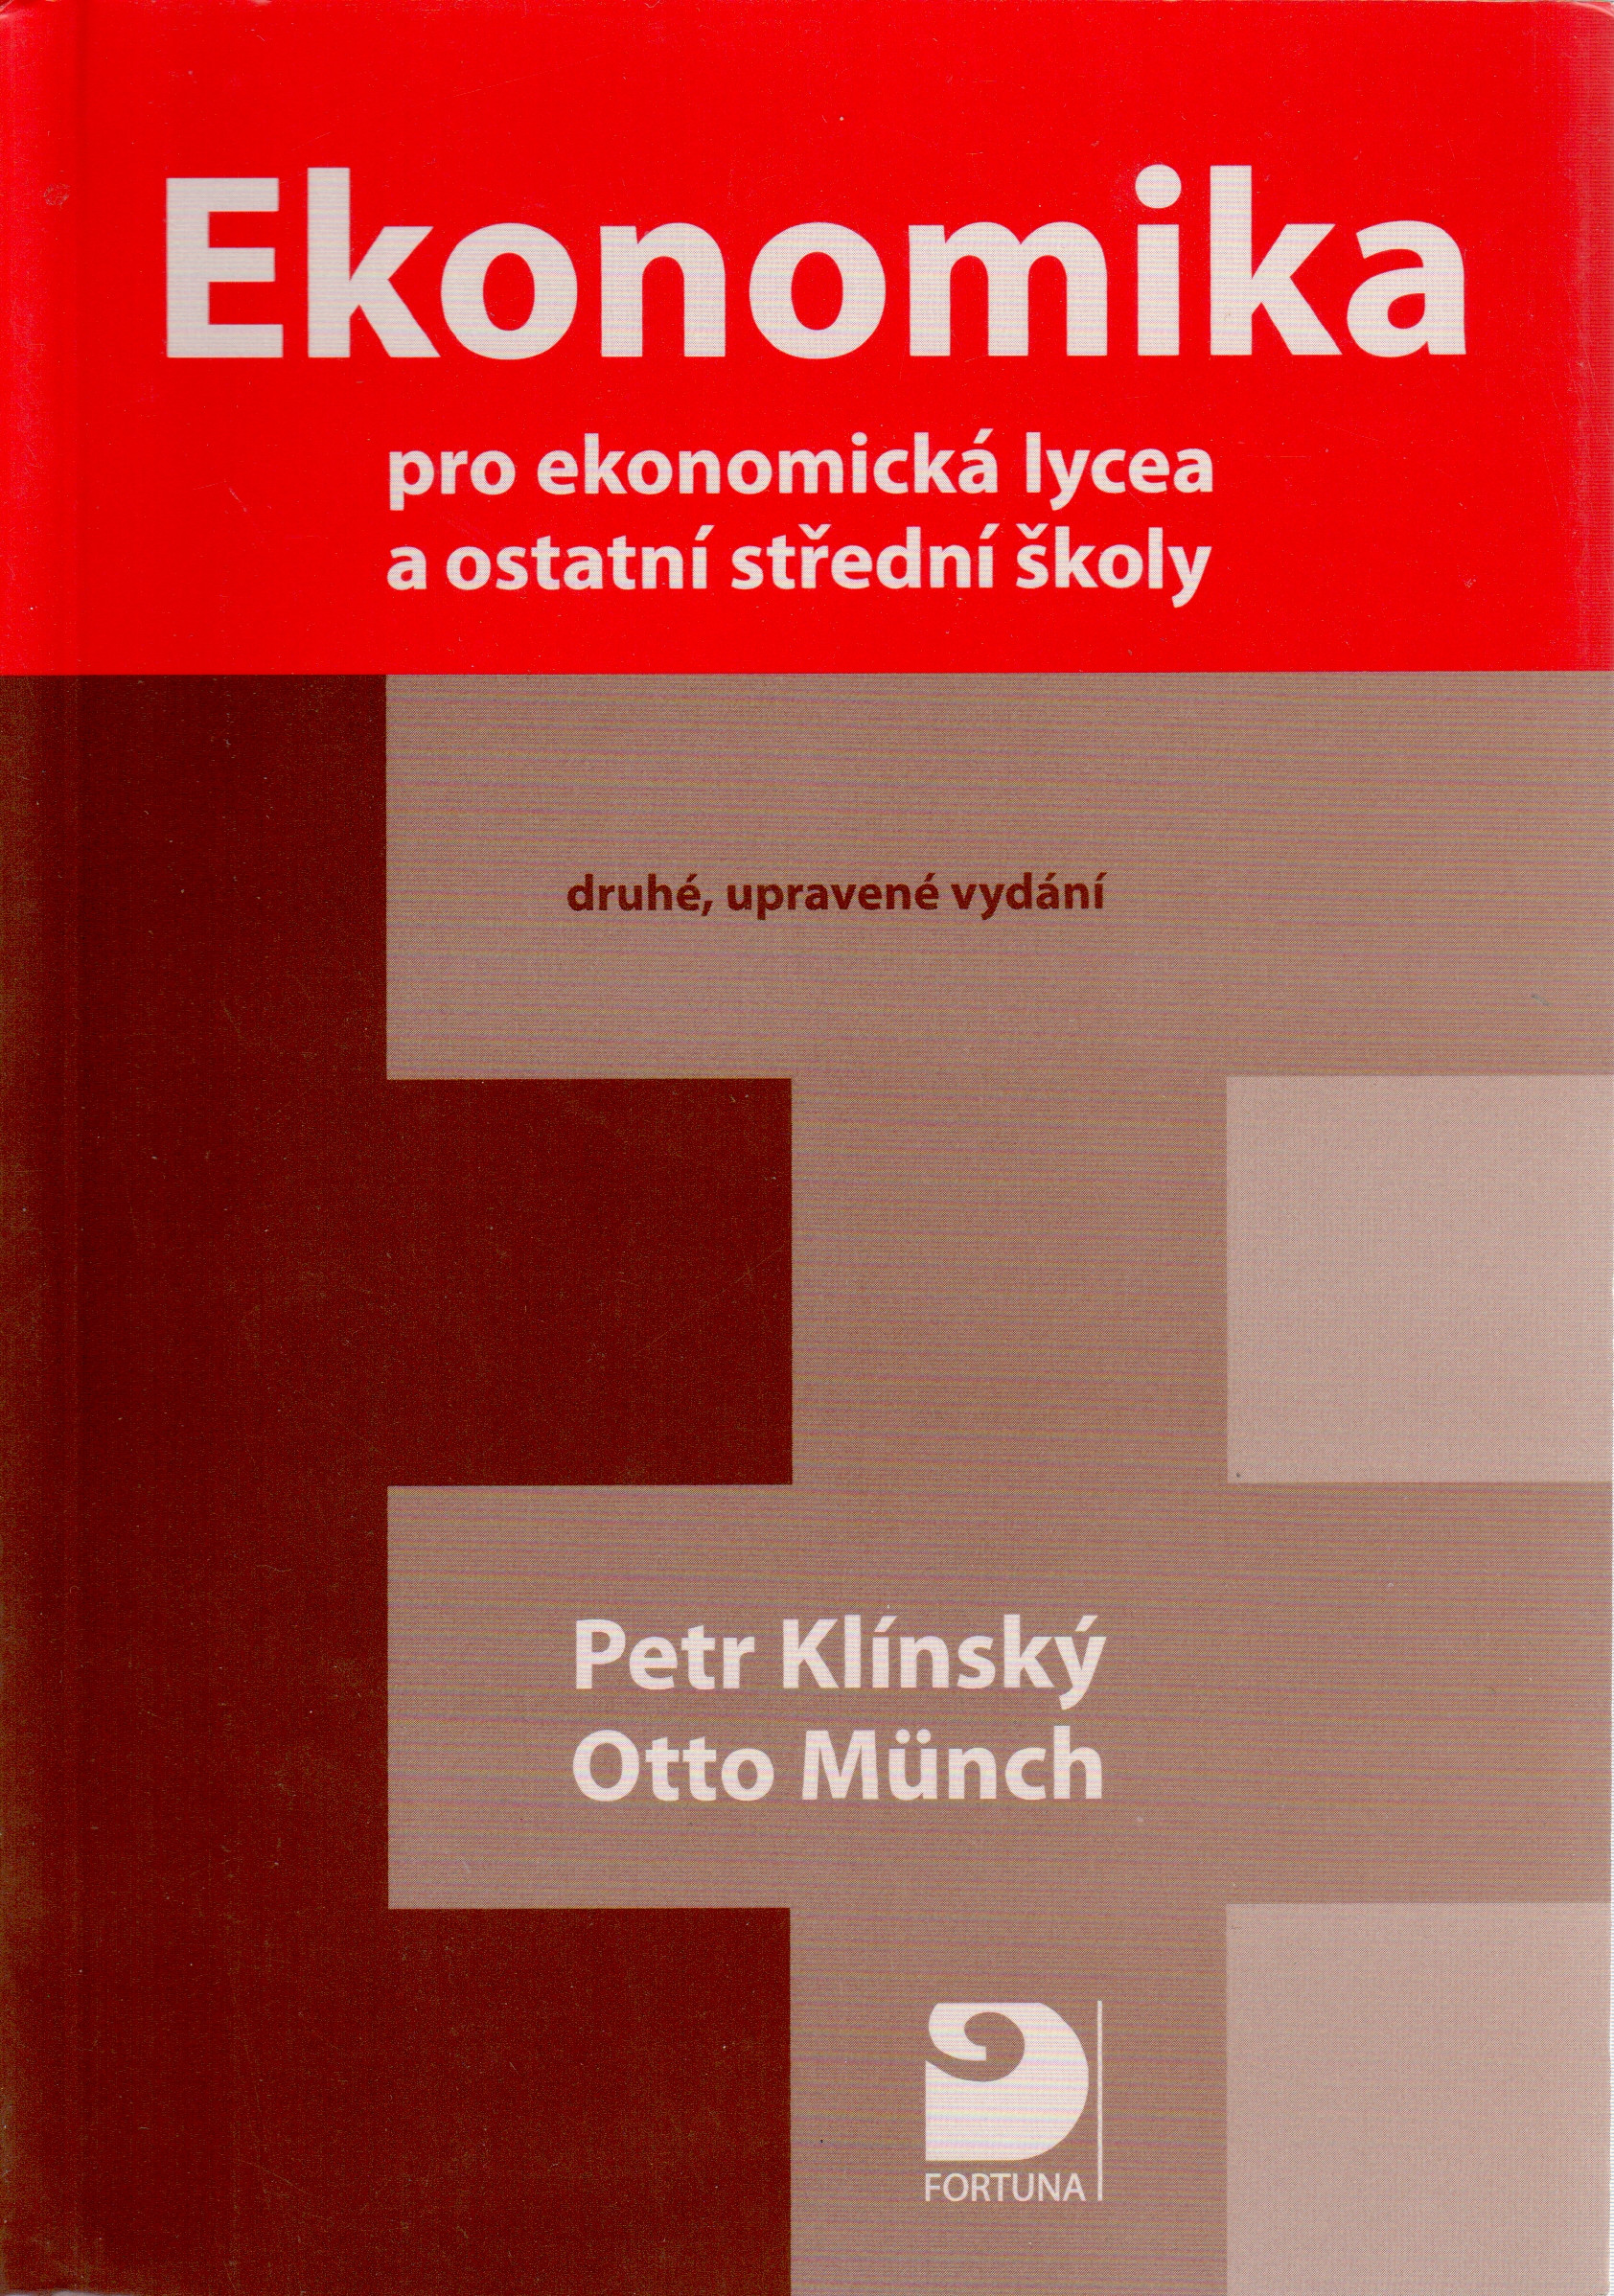 Ekonomika pro ekonomická lycea a ostatní střední školy (2008) - Náhled učebnice